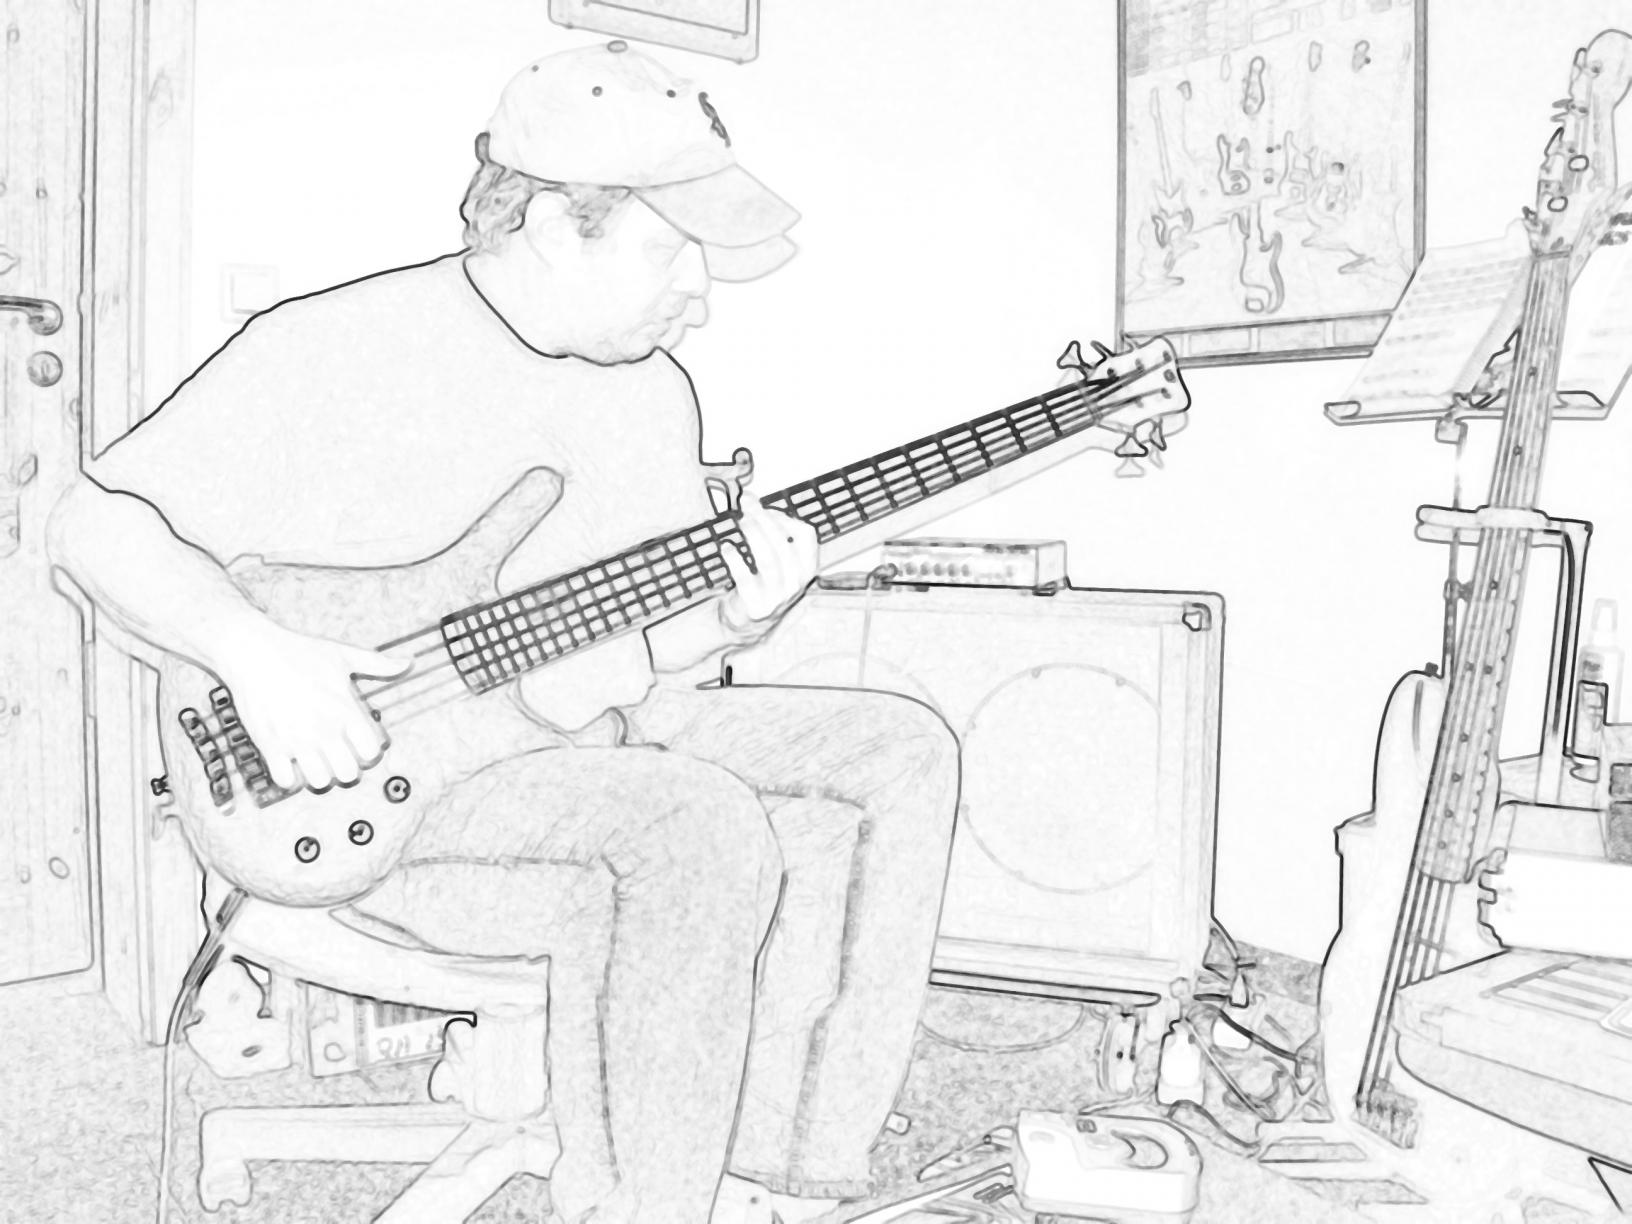 Joe with WarwickThumb NT 5 Bass